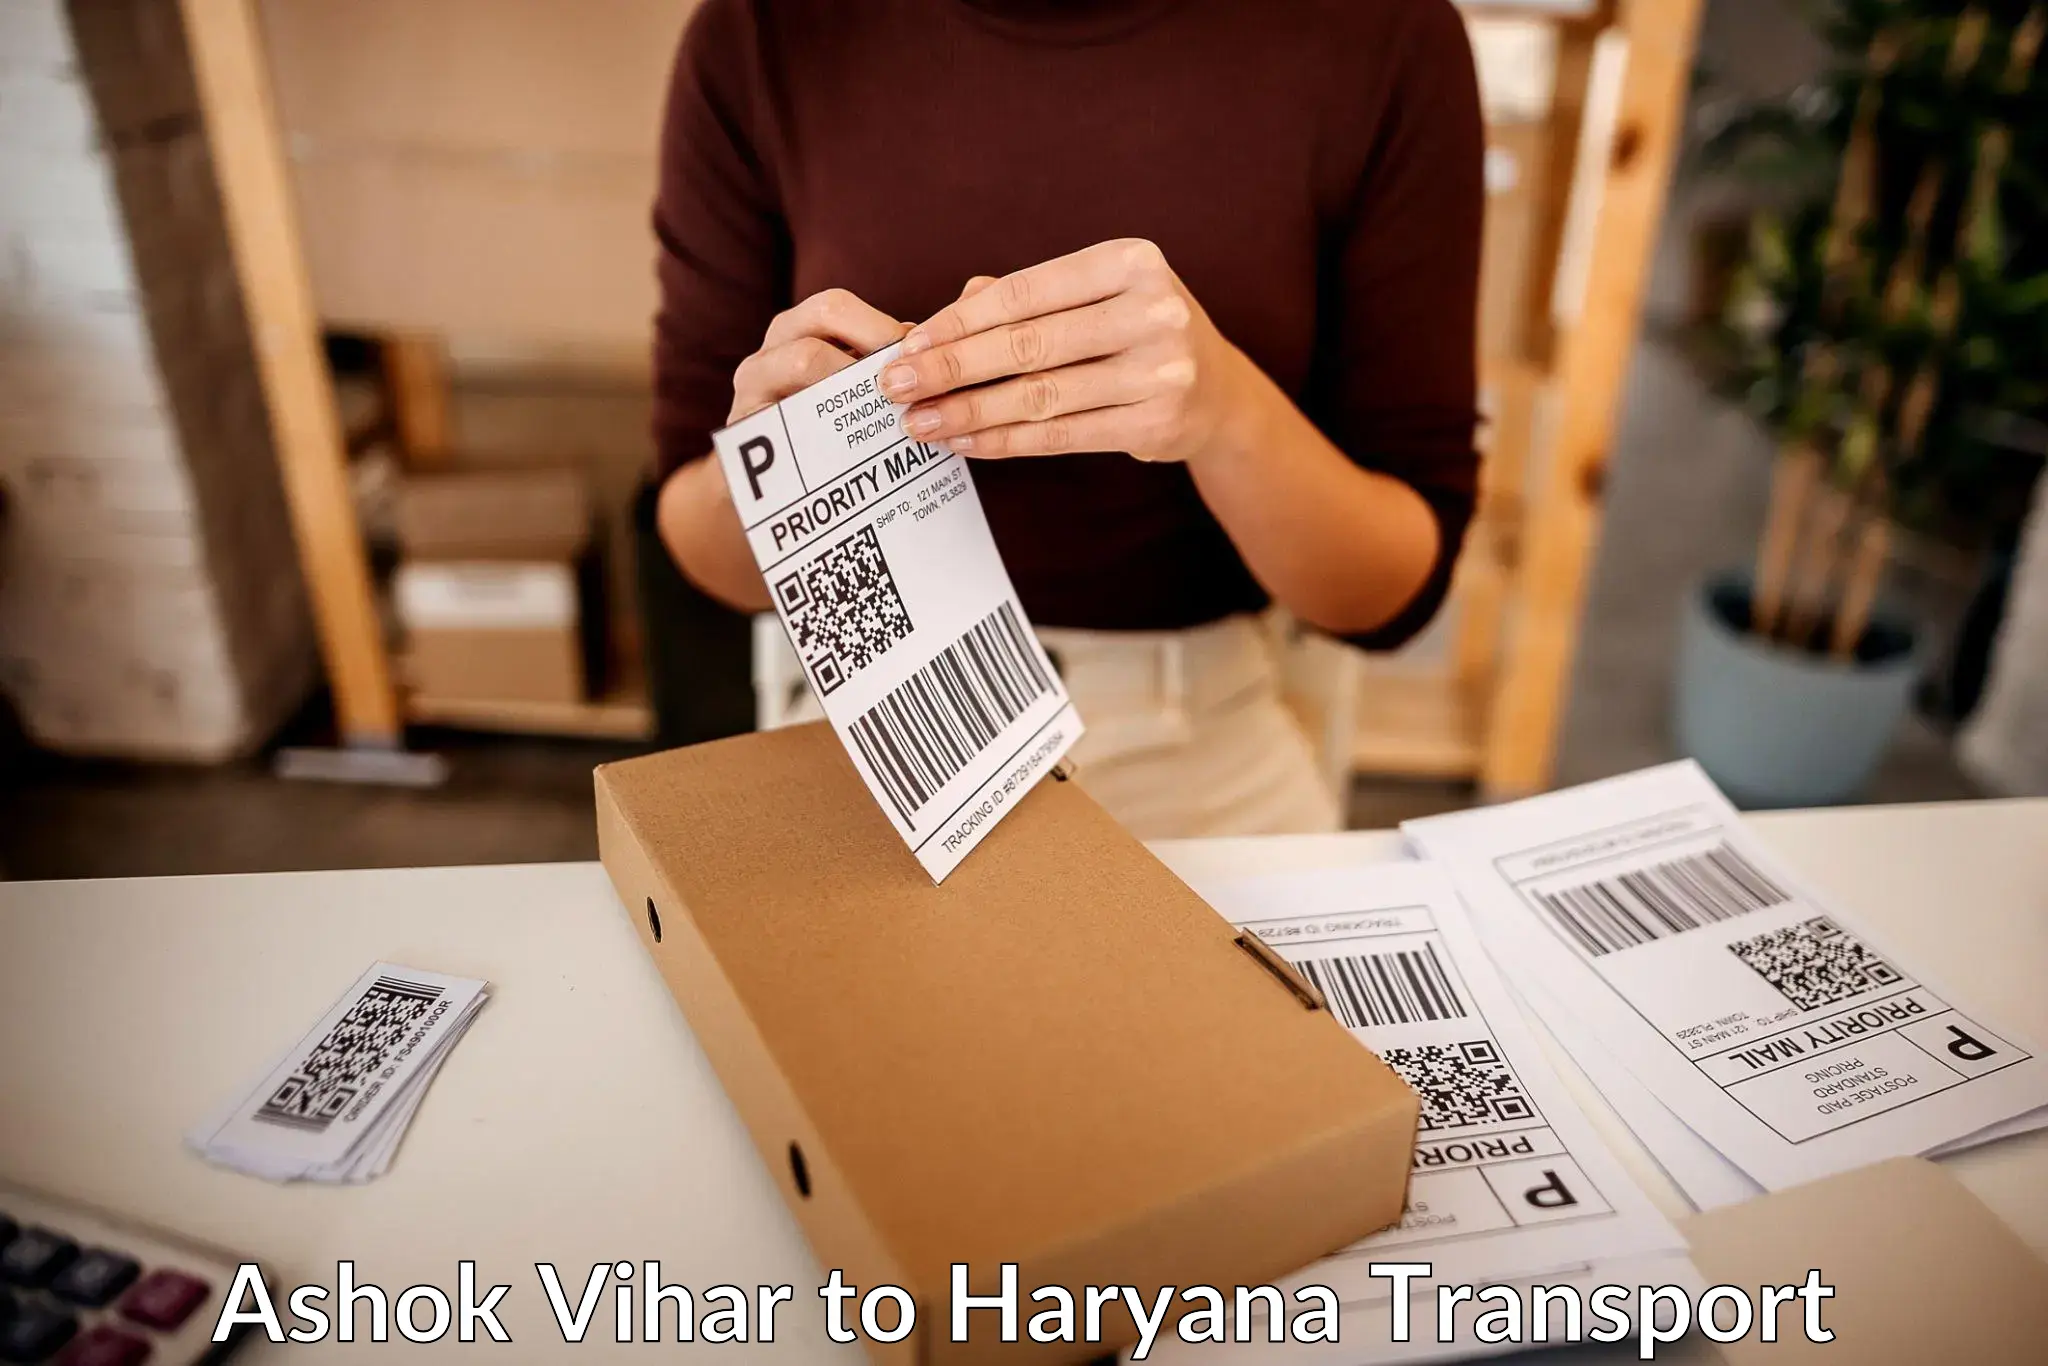 Shipping services Ashok Vihar to Haryana